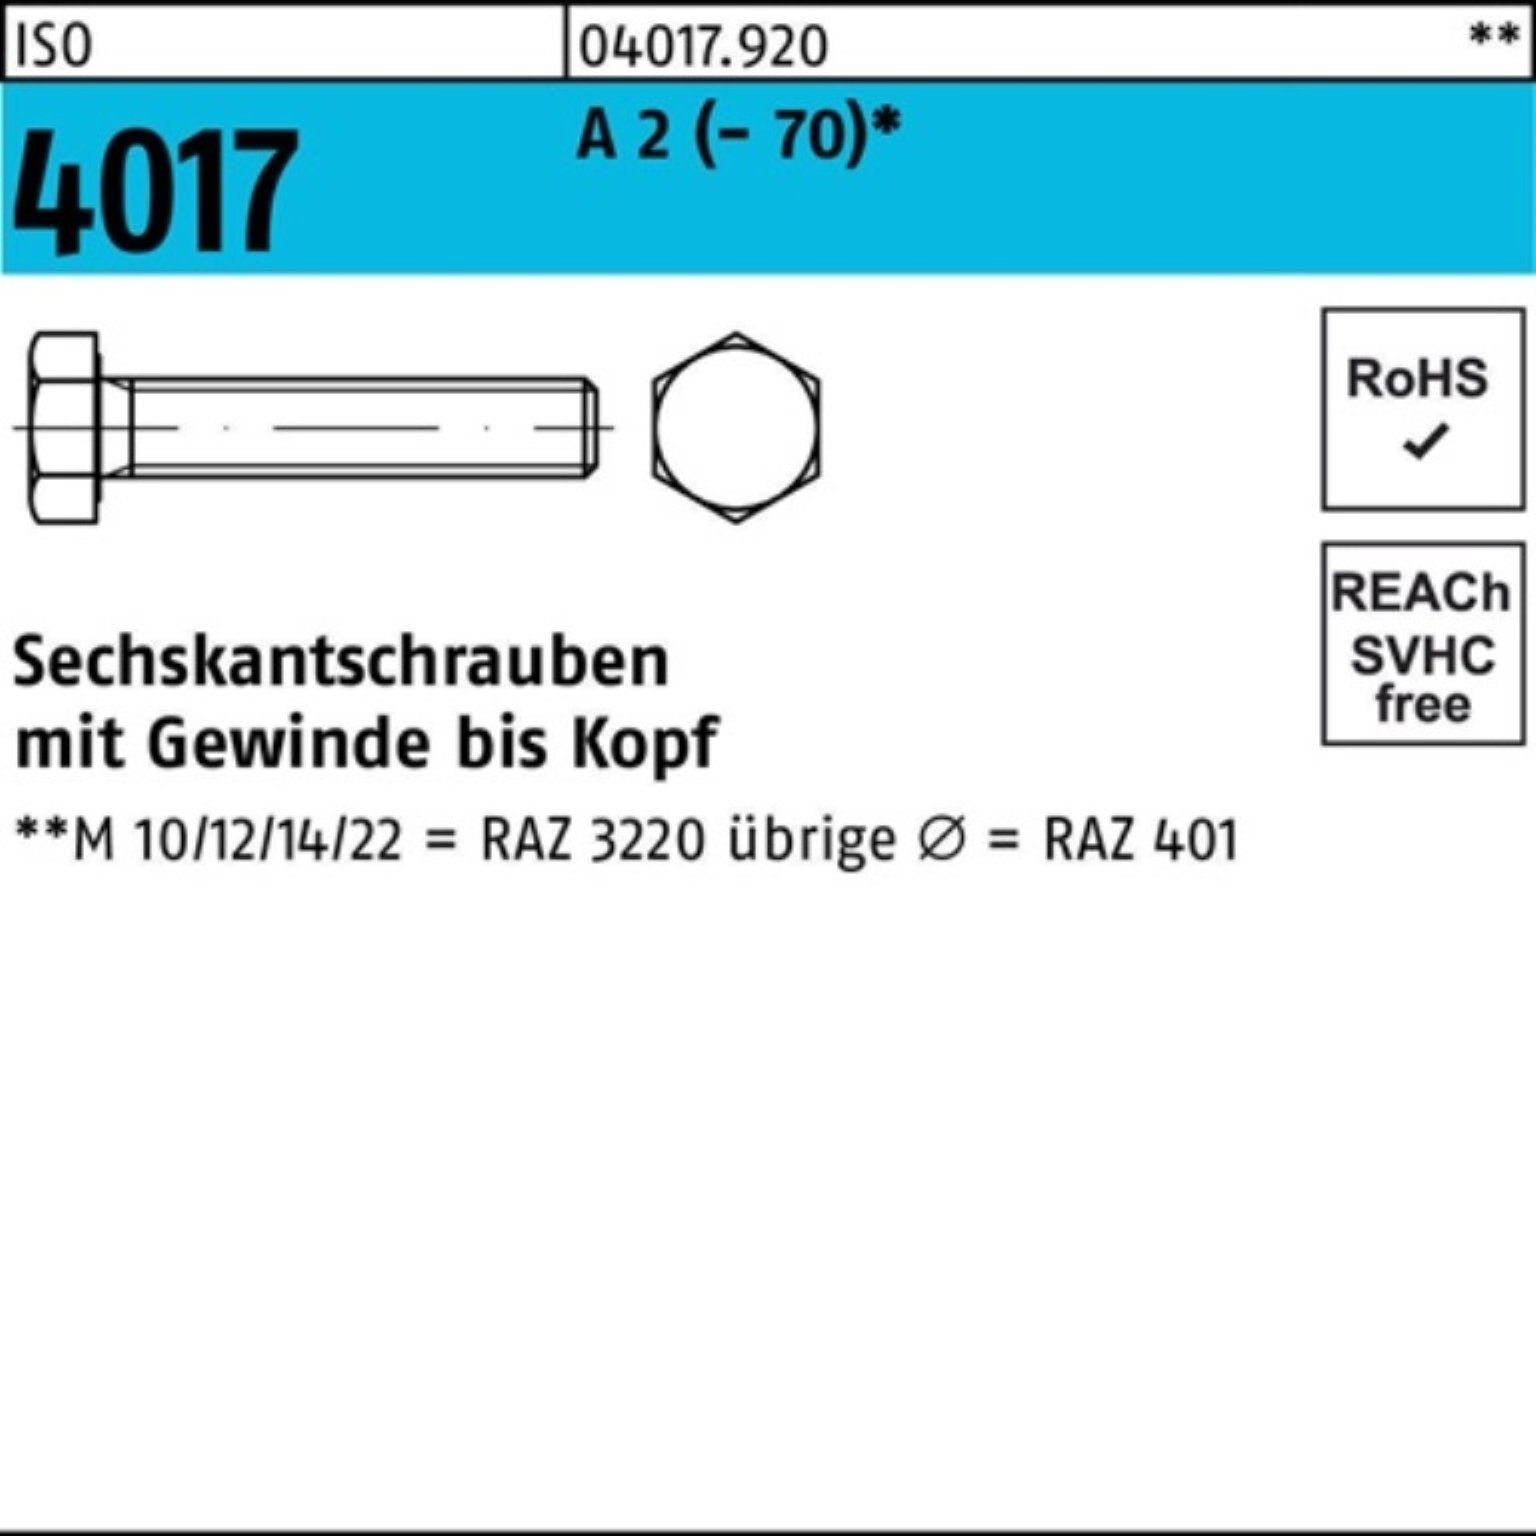 (70) Bufab 140 1 VG Sechskantschraube M18x Stück Pack 2 A Sechskantschraube 100er 4017 ISO